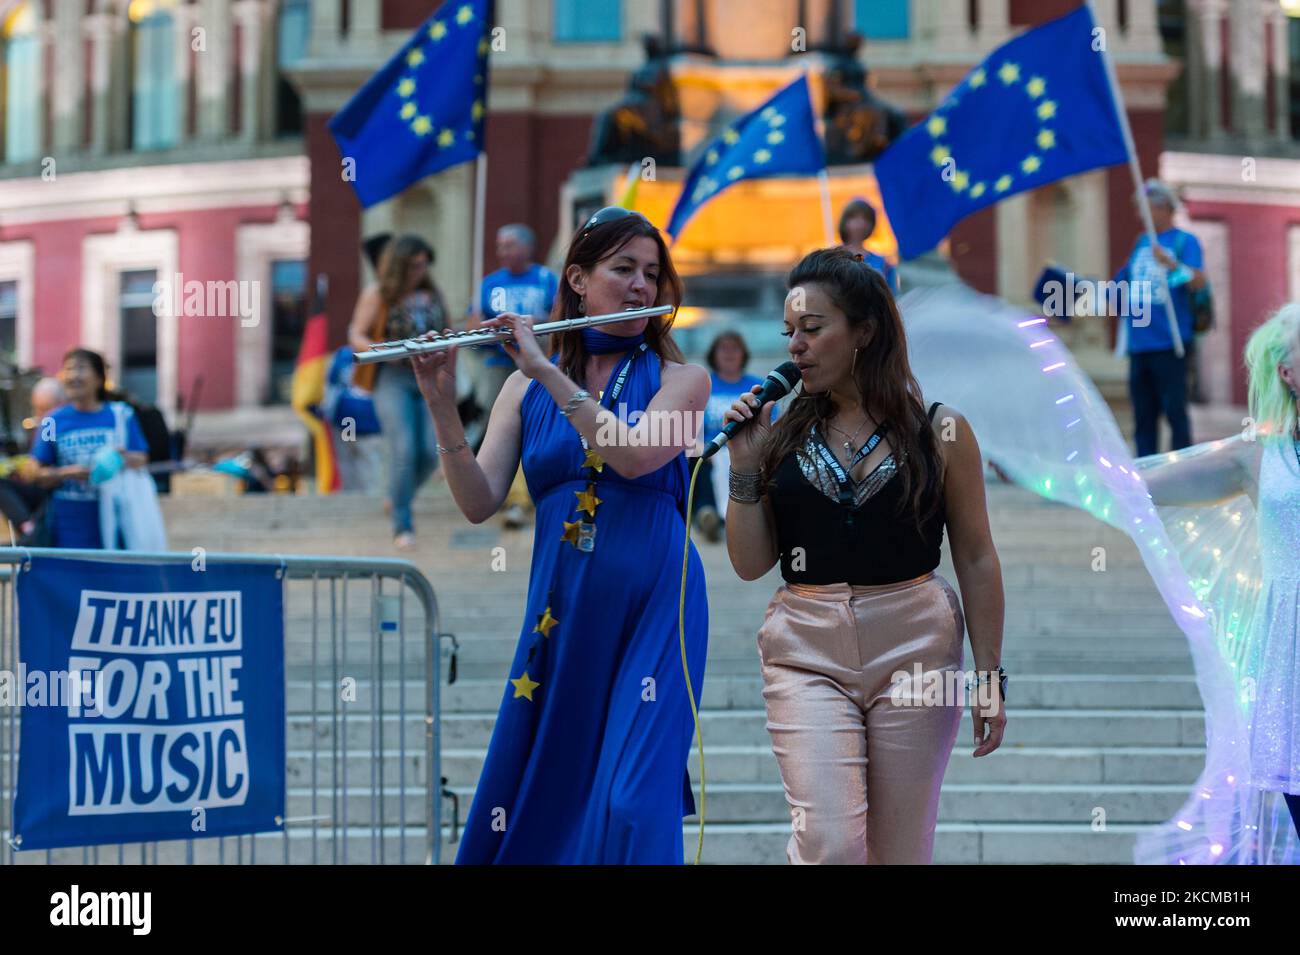 LONDON, VEREINIGTES KÖNIGREICH - 11. SEPTEMBER 2021: Sängerin Ilana Lorraine (R) tritt vor der "Last Night of the Proms" vor der Royal Albert Hall auf, als pro-EU-Aktivisten vor der "Last Night of the Proms" Flaggen schwenken, um am 11. September 2021 in London, England, das Fehlen eines Abkommens für Tourneen nach dem Brexit zu unterstreichen. Die Aktivisten fordern die Regierung auf, ein Übergangspaket zur Deckung der zusätzlichen Kosten nach dem Brexit einzuführen, bevor sie sich eine EU-weite Visumpflicht für Touring-Künstler sichern. (Foto von Wiktor Szymanowicz/NurPhoto) Stockfoto